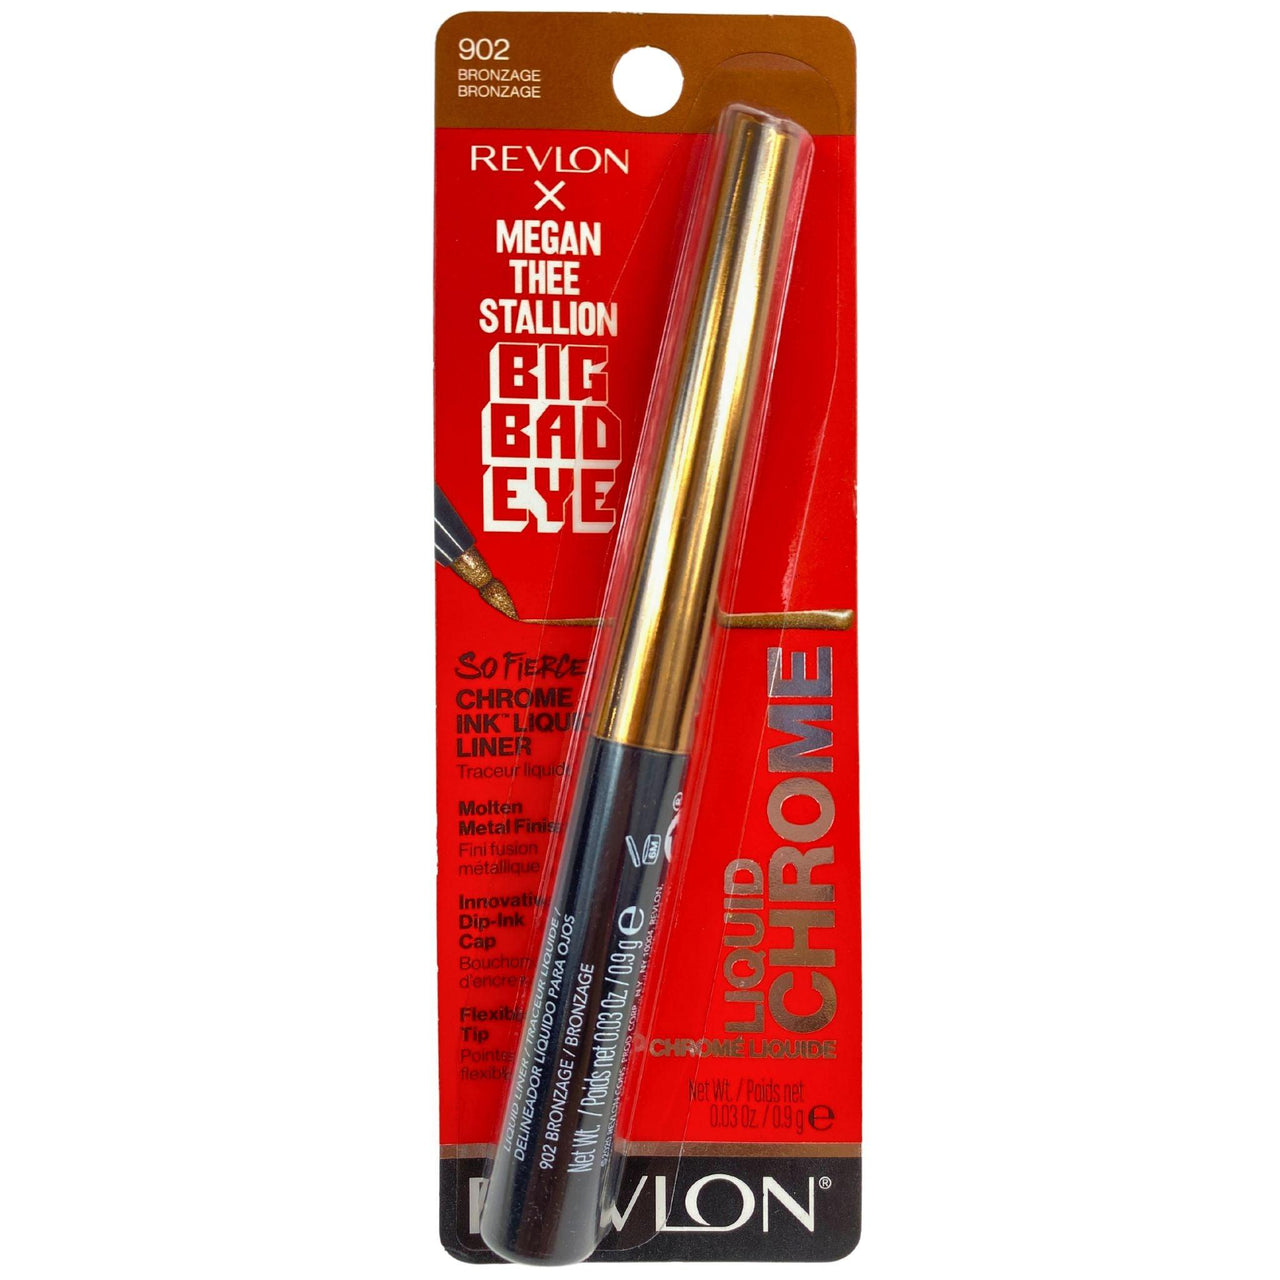 Revlon So Fierce! Chrome Ink Liquid Liner 902 Bronzage (28 Pcs Lot) - Discount Wholesalers Inc